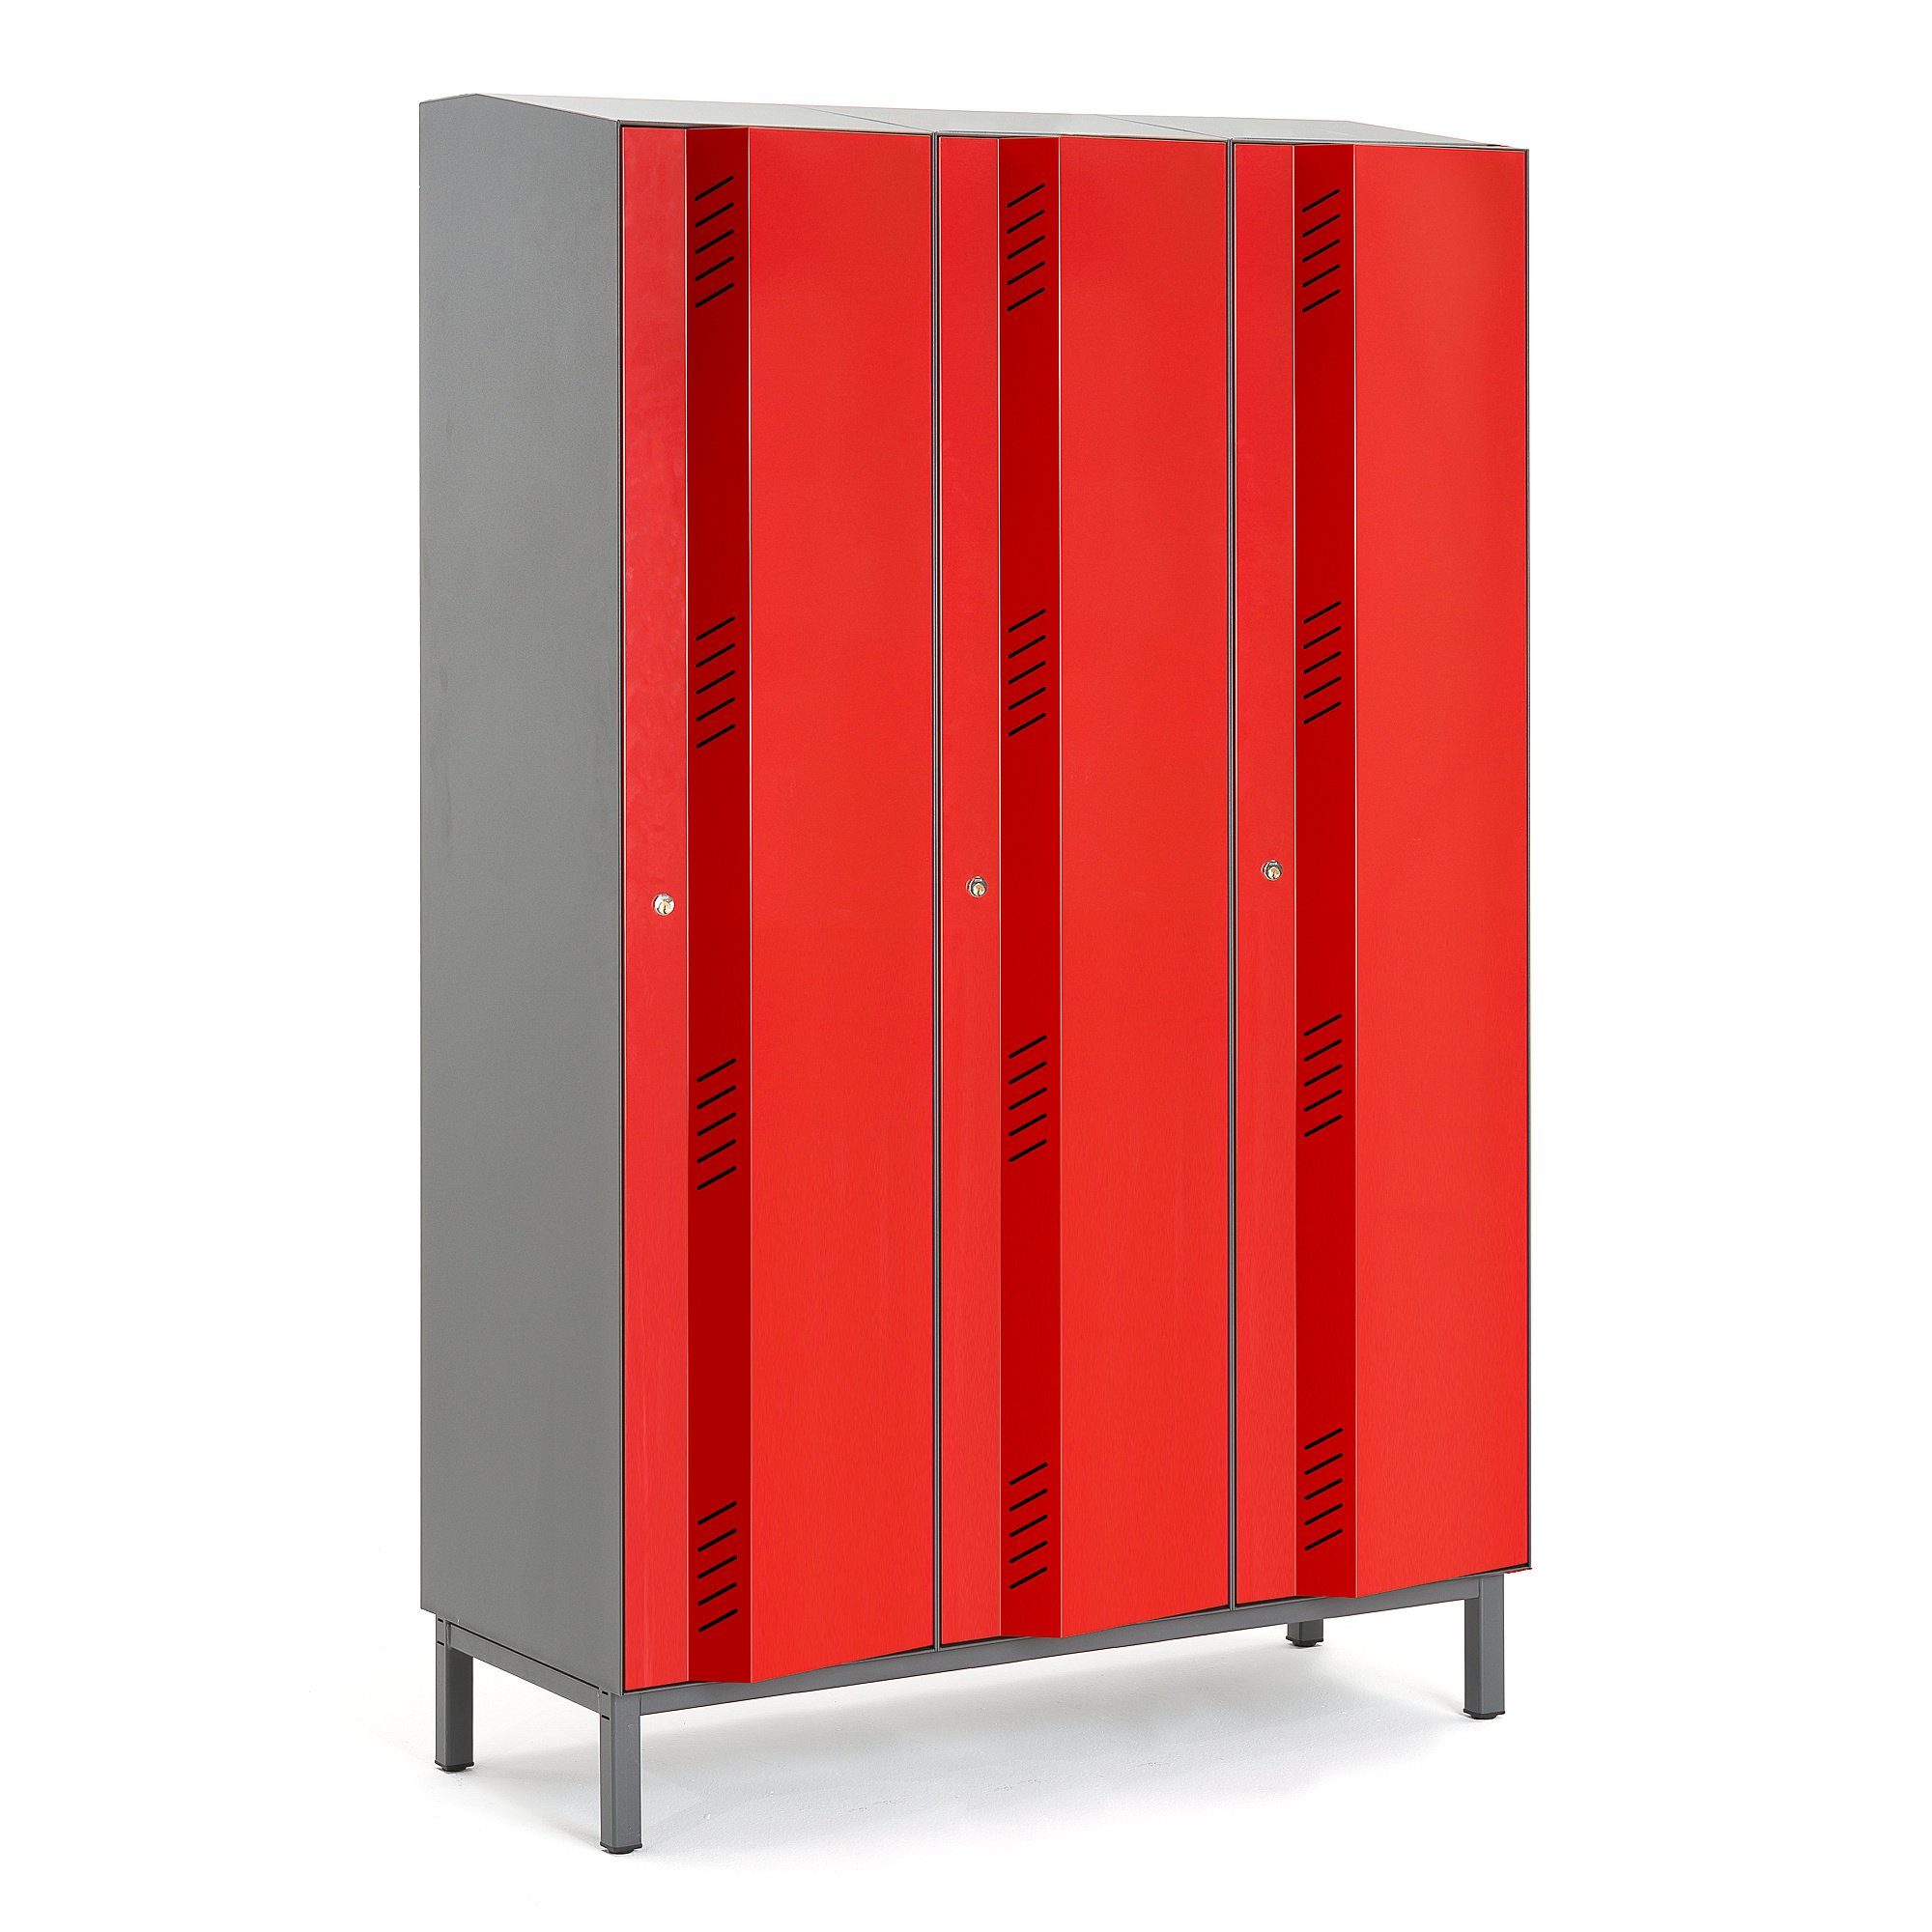 Šatní skříň CREATE ENERGY, 3 sekce, 1985x1200x500 mm, červené dveře, vč. noh